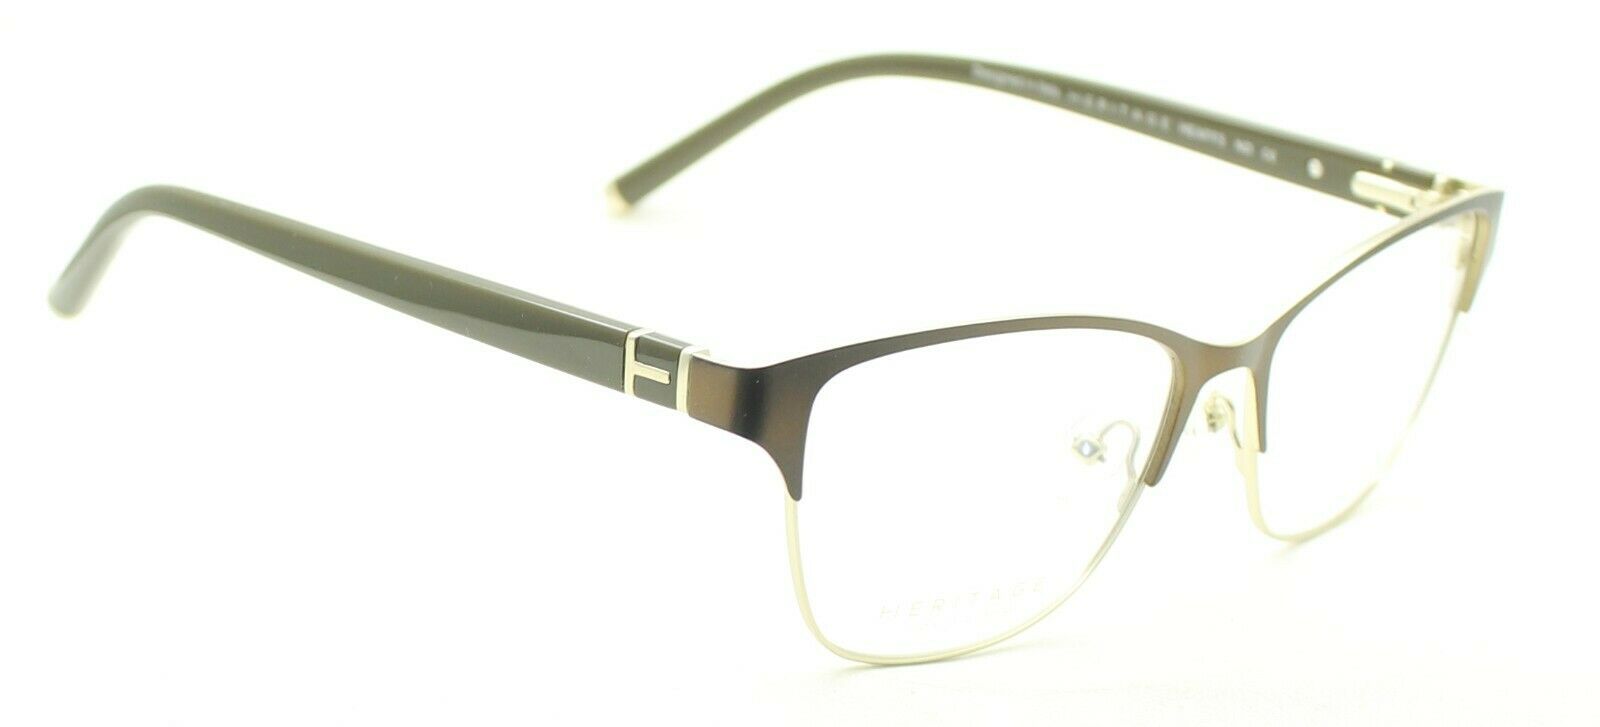 HERITAGE Iconic Luxury HEAFF5 ND Eyewear FRAMES Eyeglasses RX Optical Glasses